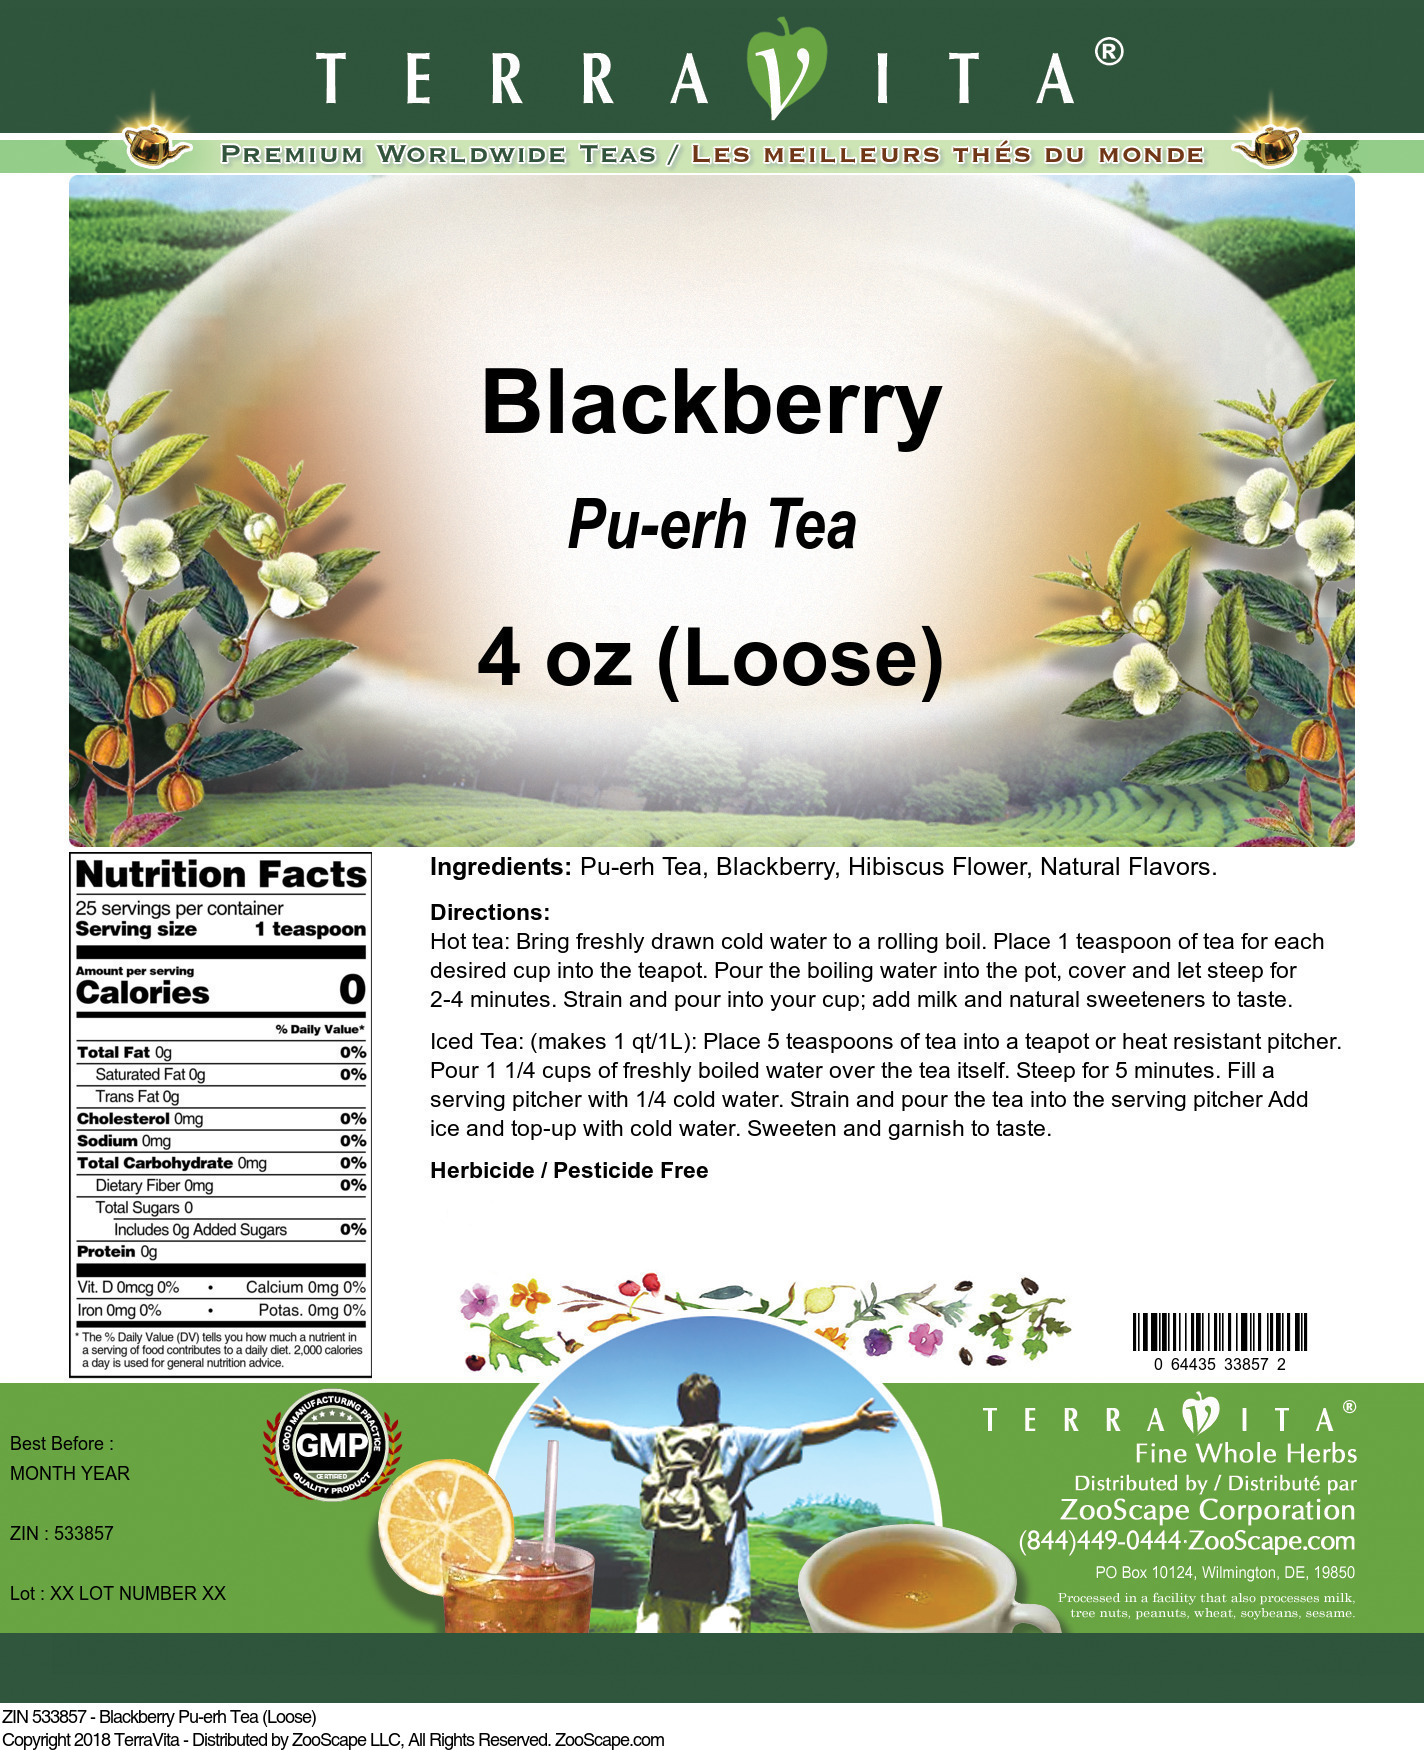 Blackberry Pu-erh Tea (Loose) - Label